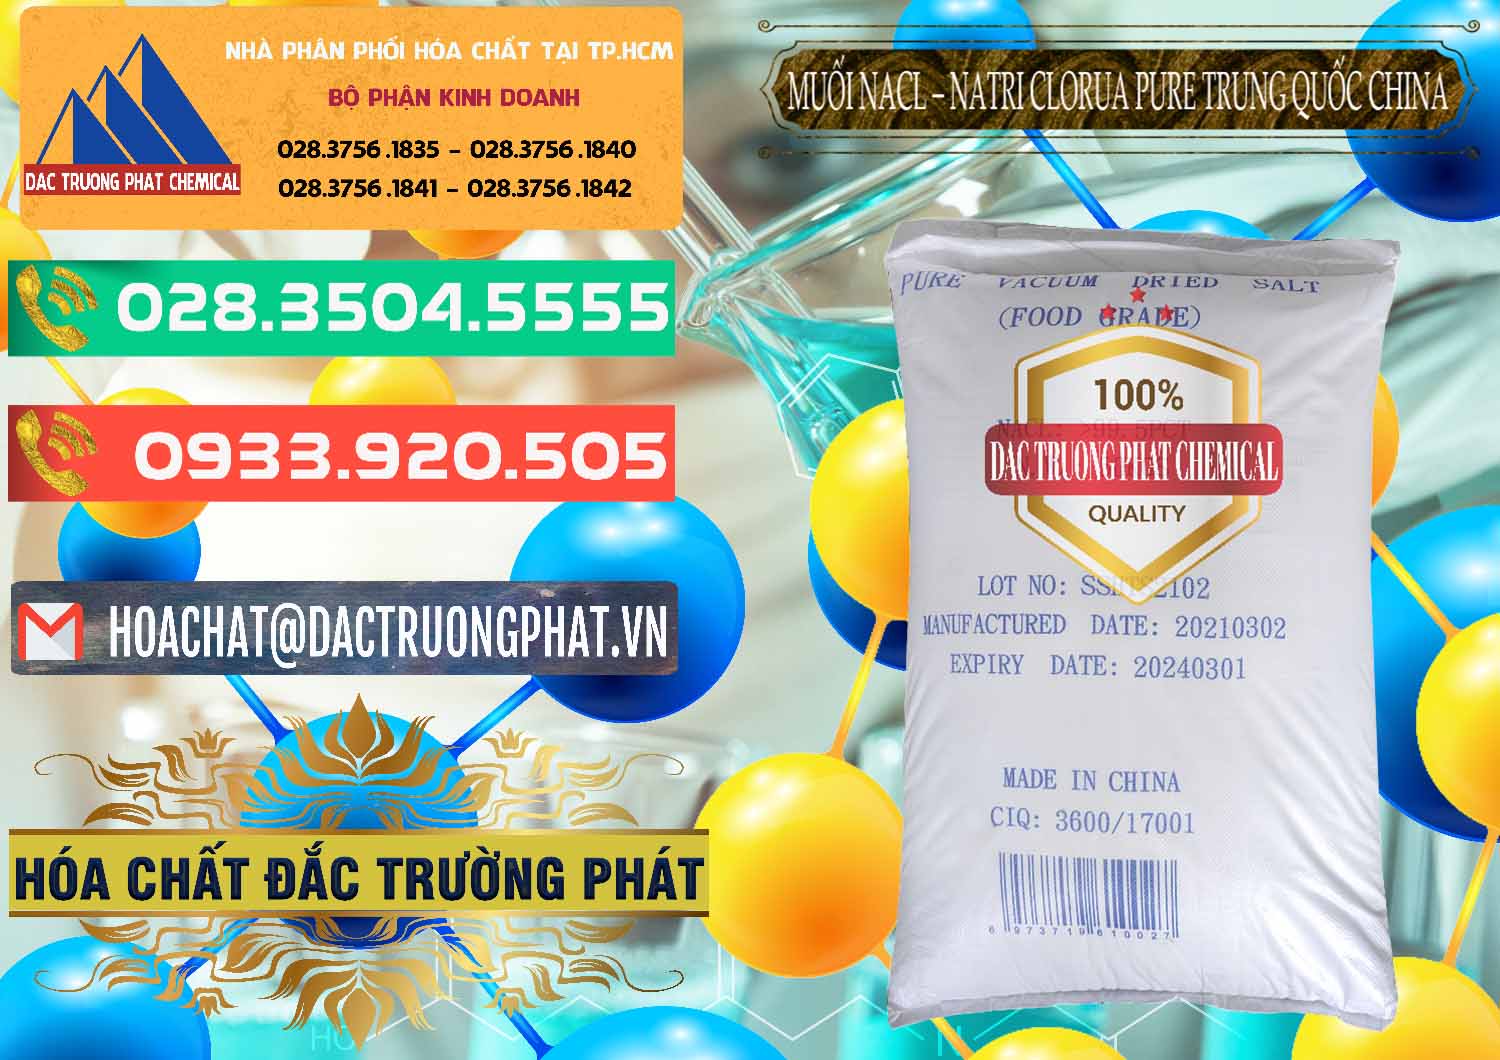 Chuyên cung ứng - bán Muối NaCL – Sodium Chloride Pure Trung Quốc China - 0230 - Công ty chuyên bán - phân phối hóa chất tại TP.HCM - congtyhoachat.com.vn